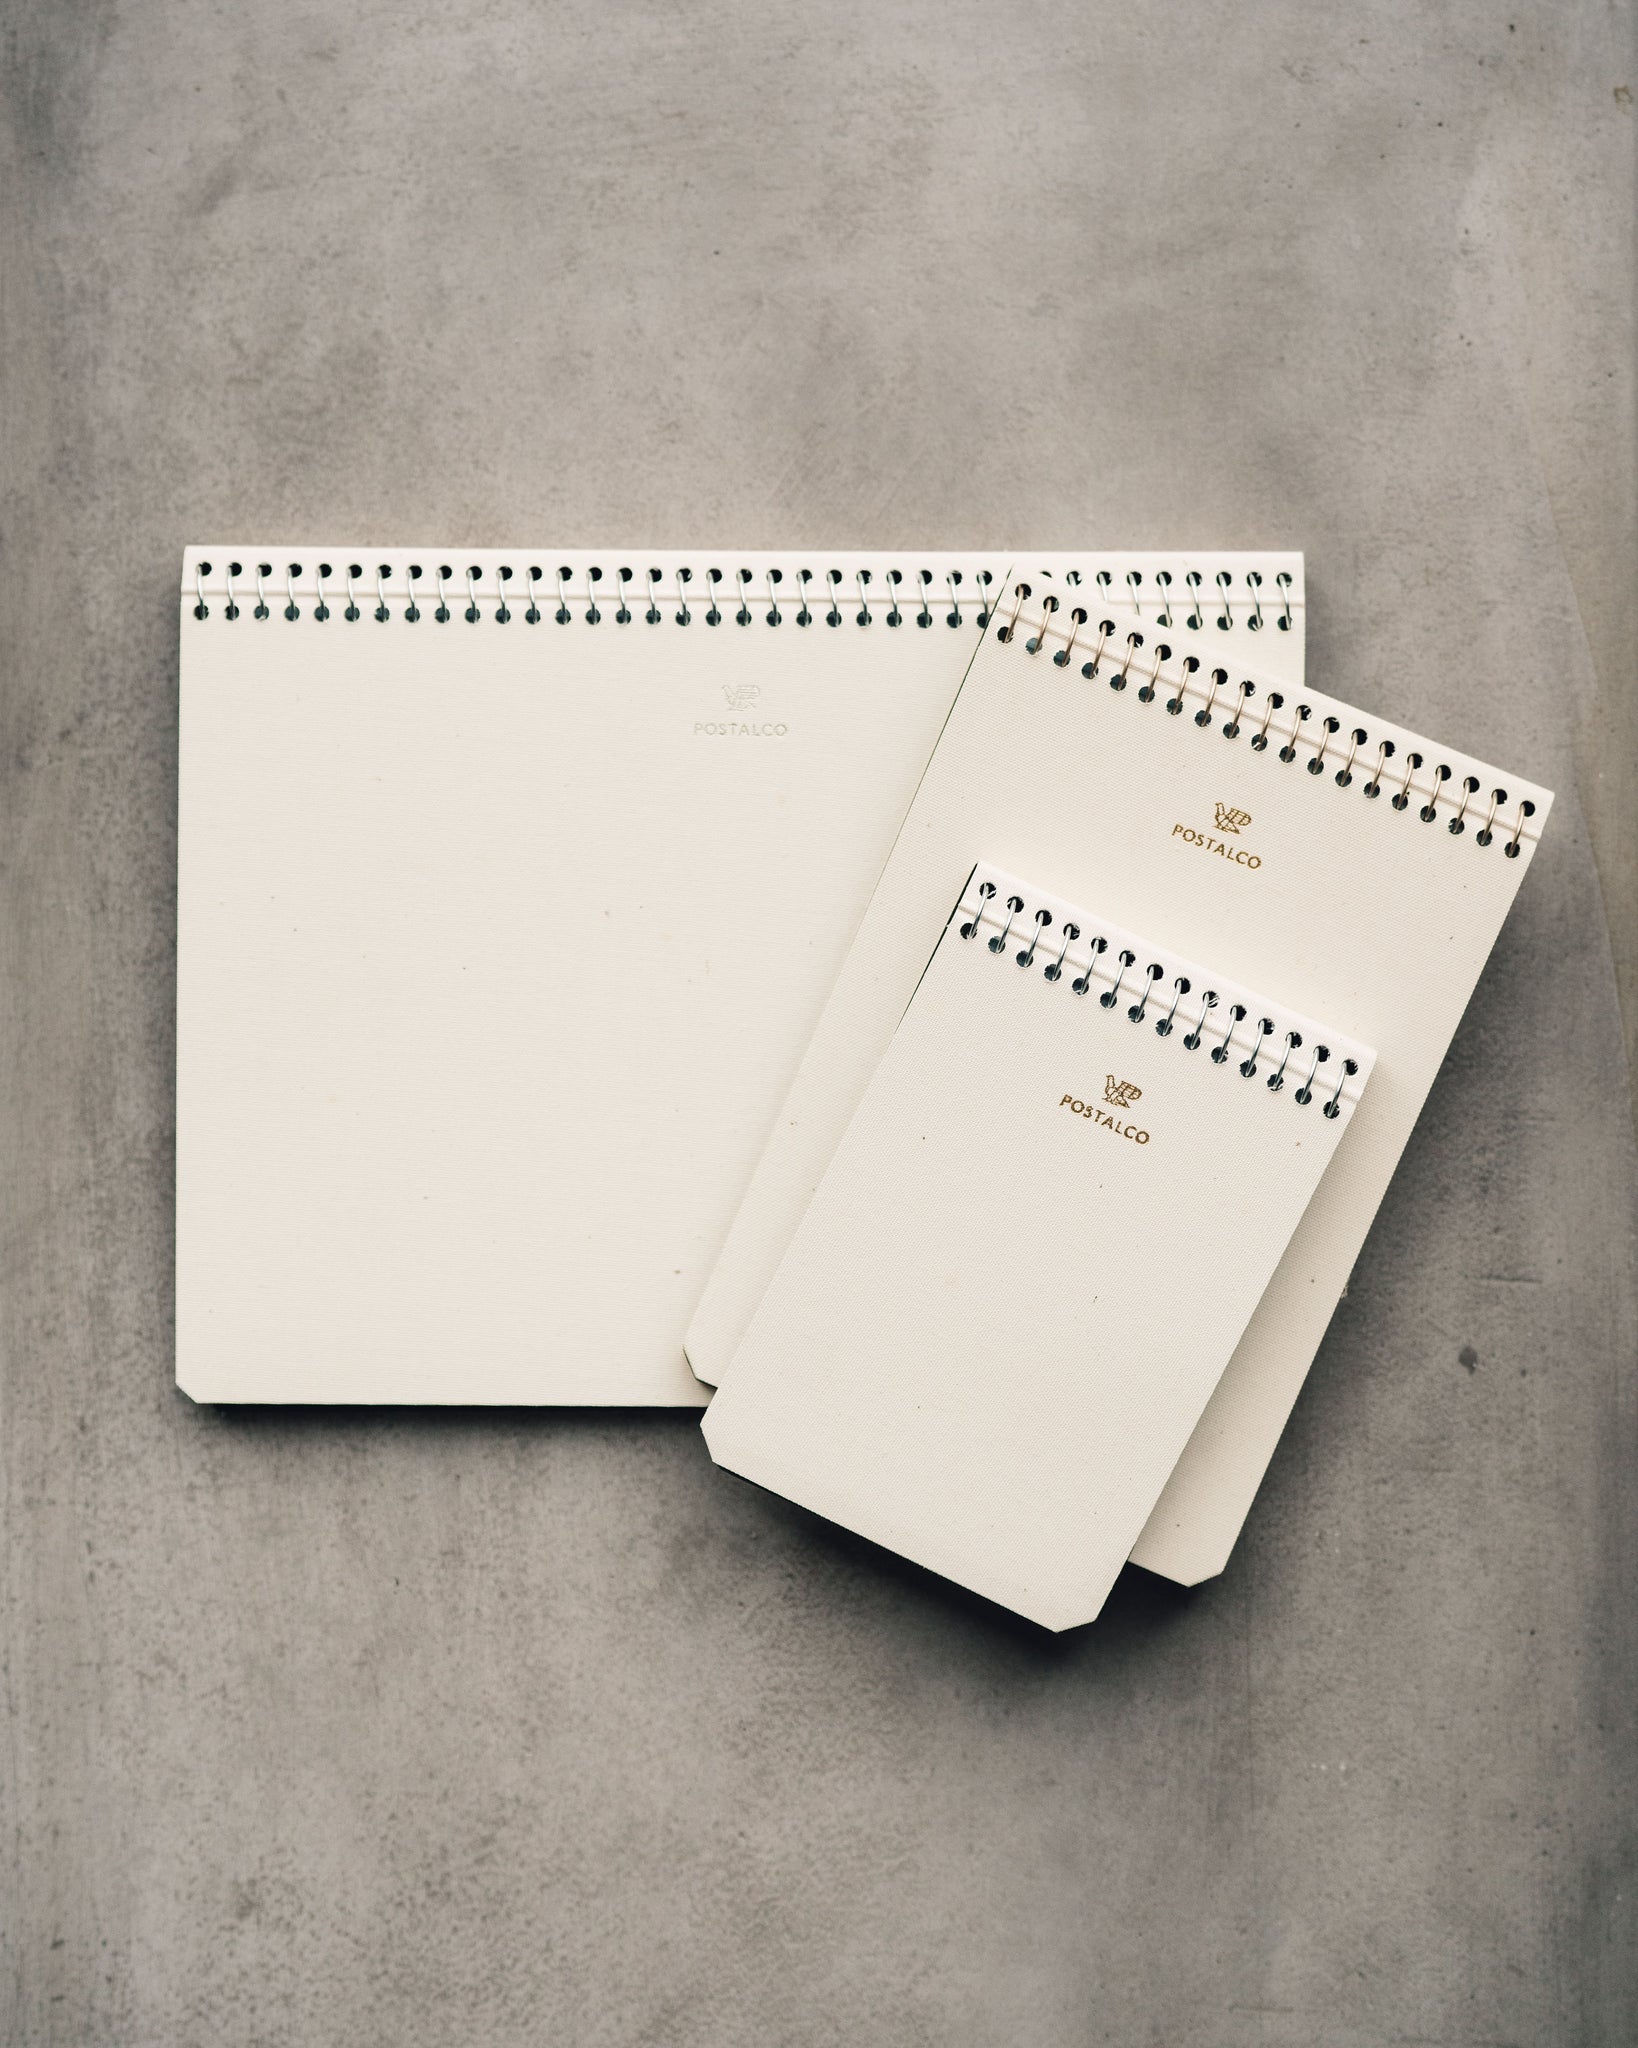 Postalco Ivory Notebooks